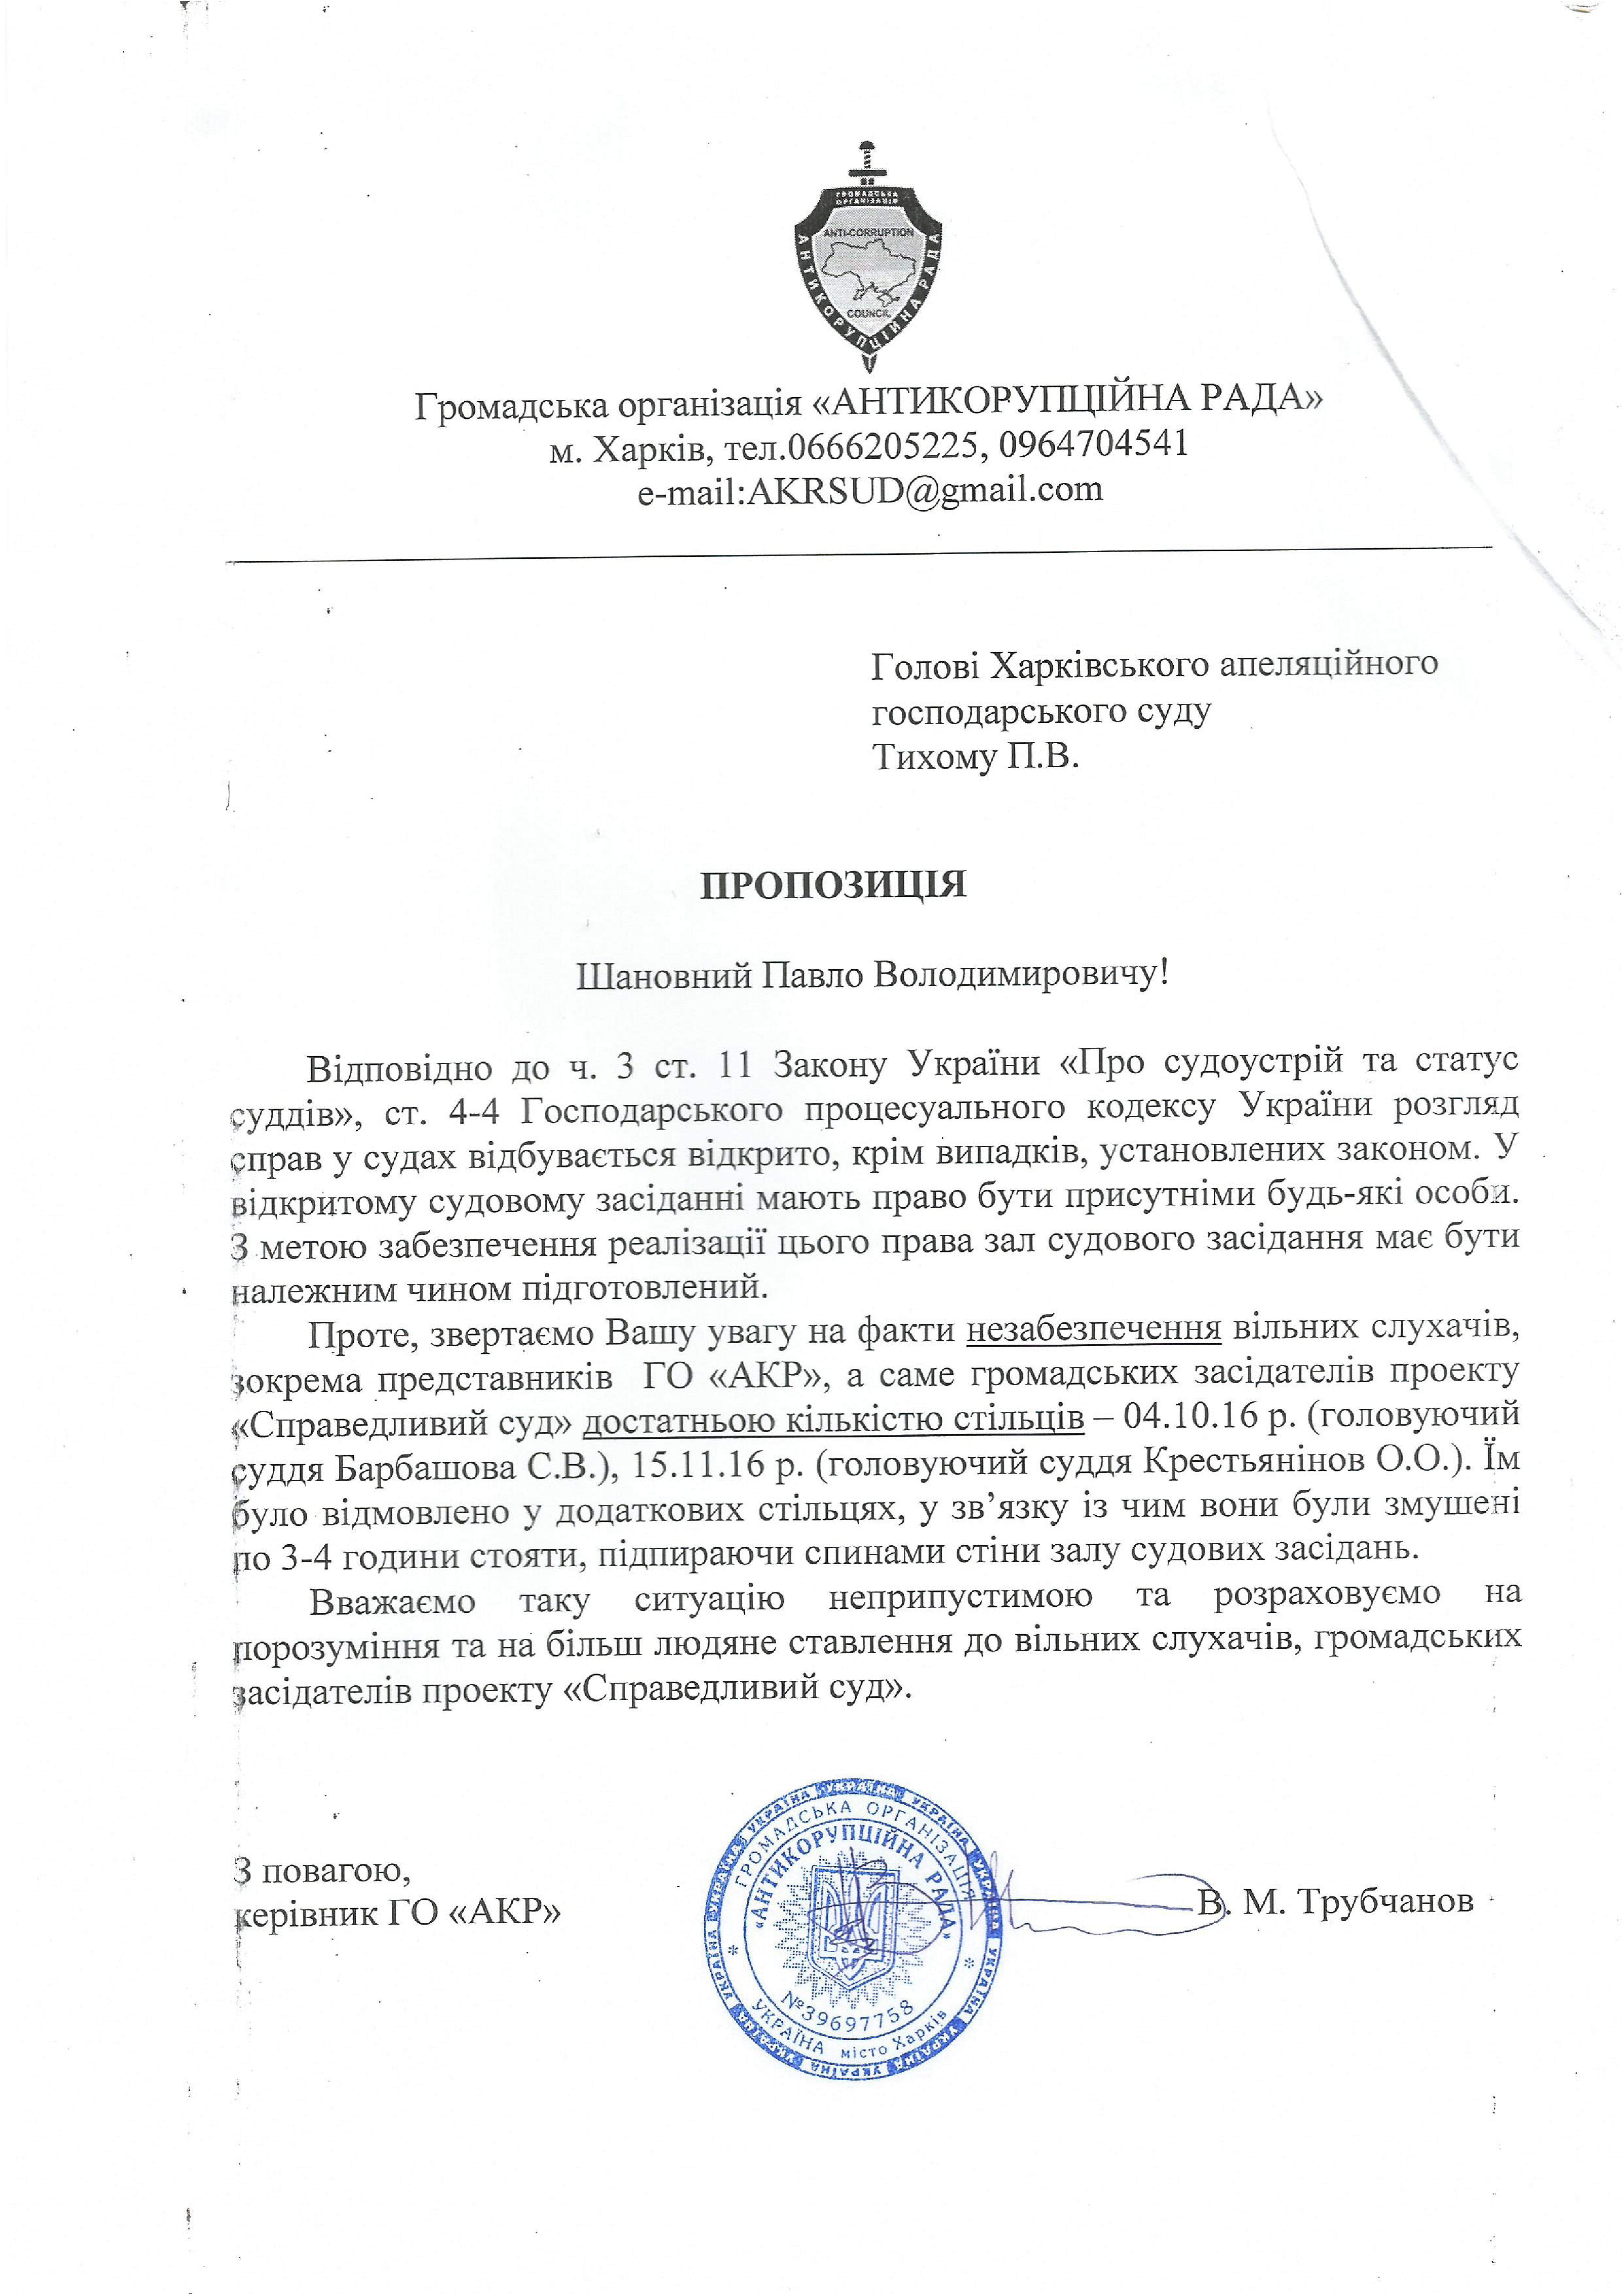 Пропозиція АКР до Харківського суду